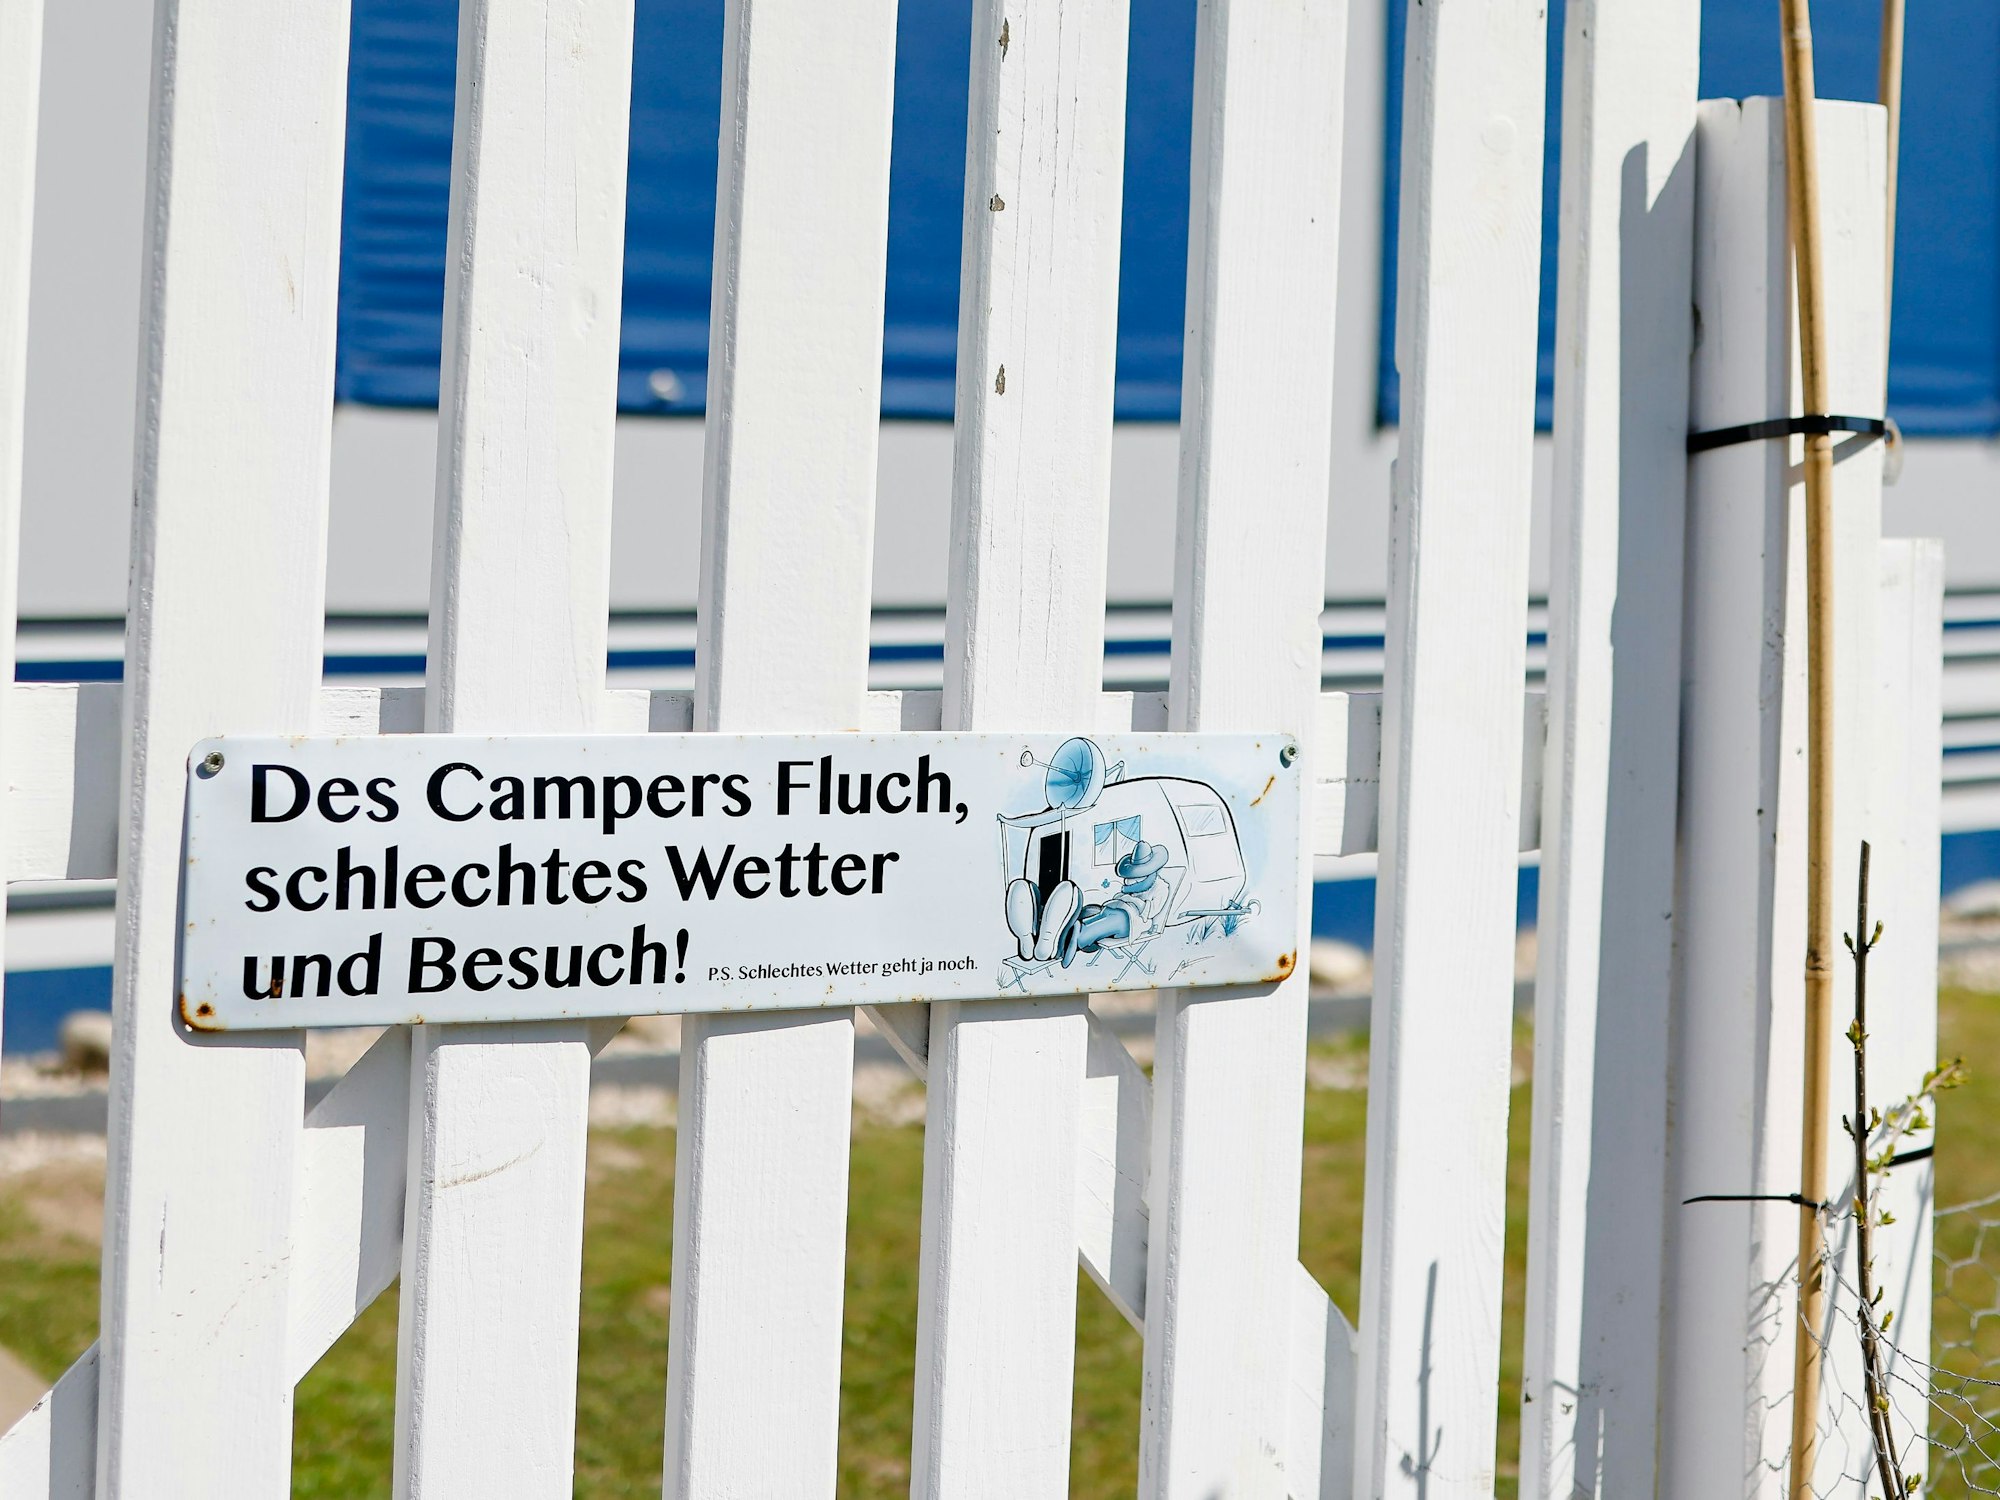 Ein Schild mit dem Spruch "Des Campers Fluch, schlechtes Wetter und Besuch" ist an einem Zaun vor einem Vorzelt auf einem Campingplatz befestigt.